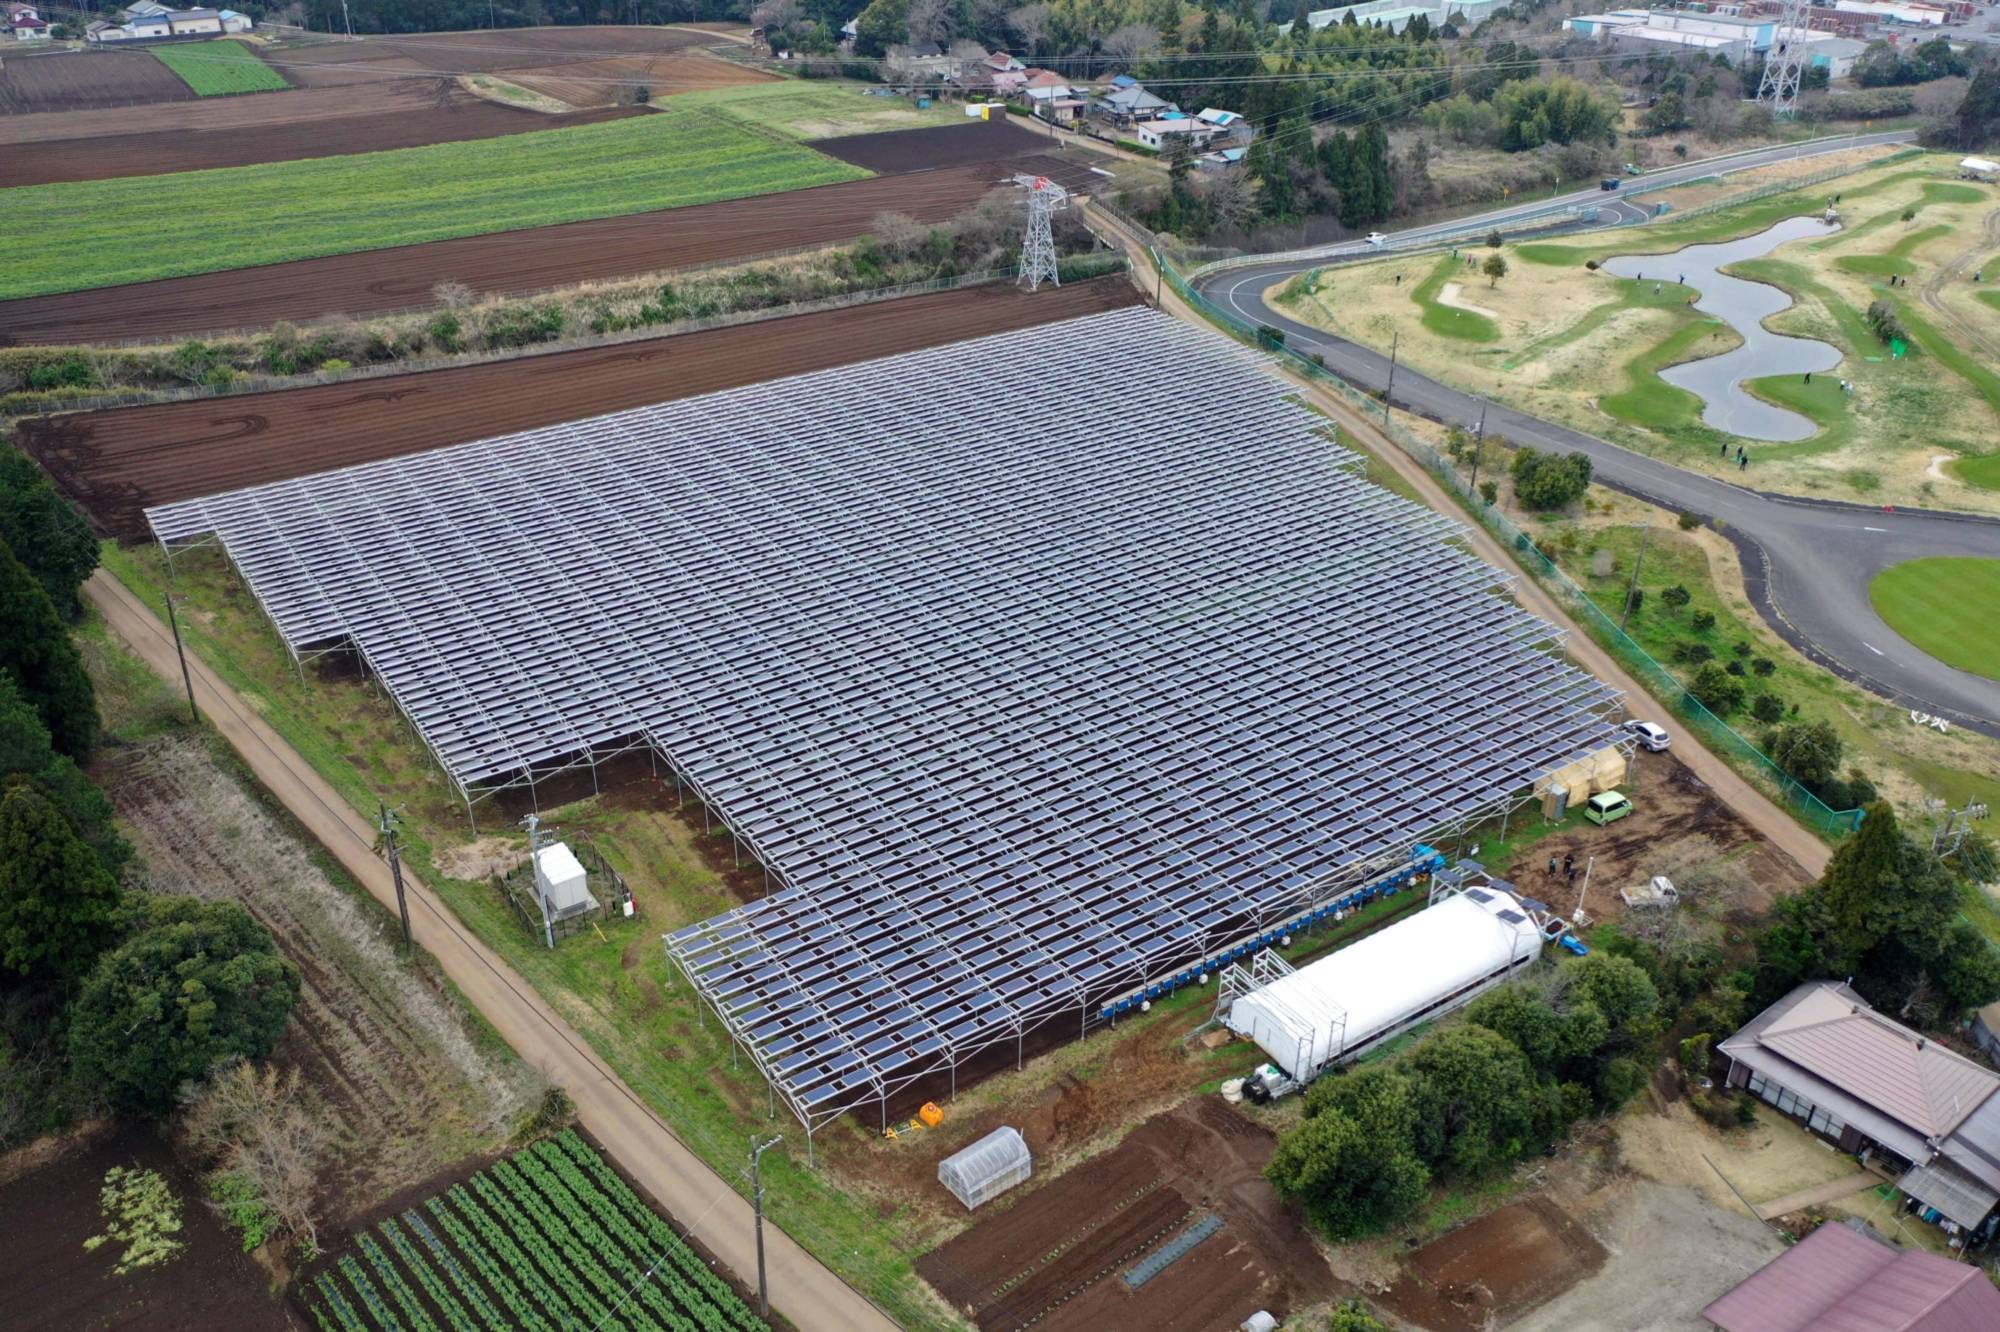 Các tấm pin mặt trời trên đất nông nghiệp tại Đơn vị 1 của Năng lượng Nông nghiệp Ookido, được vận hành bởi Chiba Ecological Energy, ở Chiba.  Trang trại đi đầu trong chương trình được gọi là chia sẻ năng lượng mặt trời - hay còn gọi là điện nông - liên quan đến việc sử dụng đồng thời đất nông nghiệp để sản xuất cây trồng và sản xuất điện.  |  BLOOMBERG